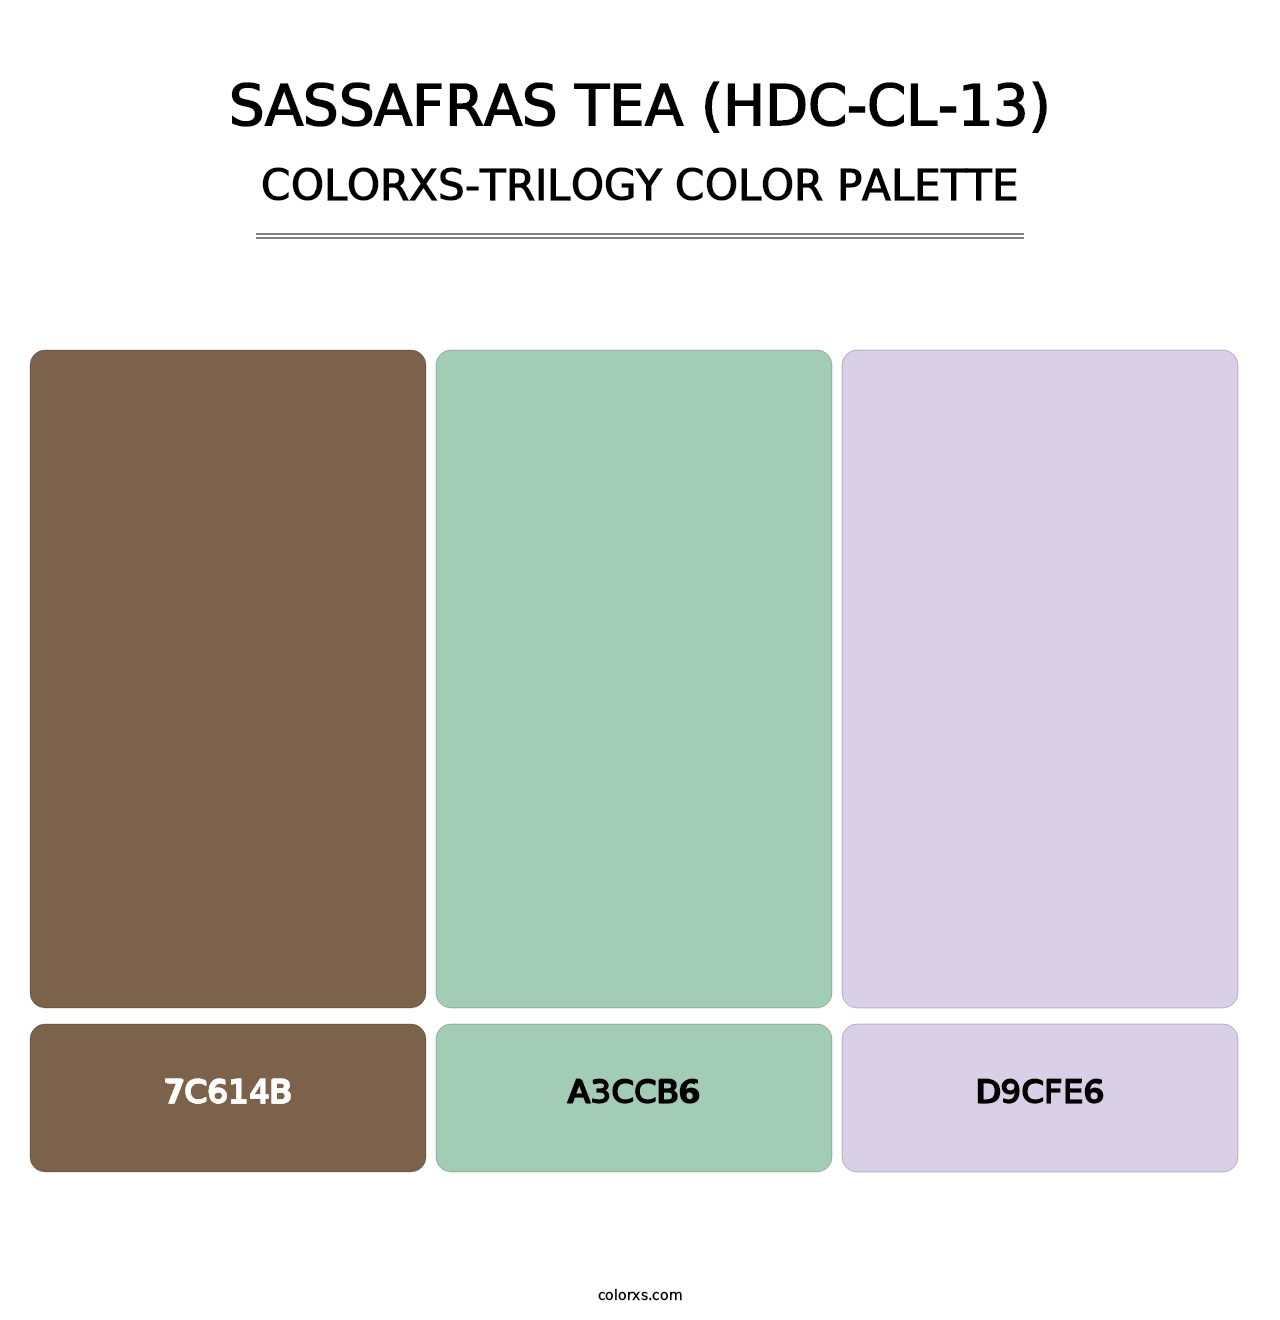 Sassafras Tea (HDC-CL-13) - Colorxs Trilogy Palette